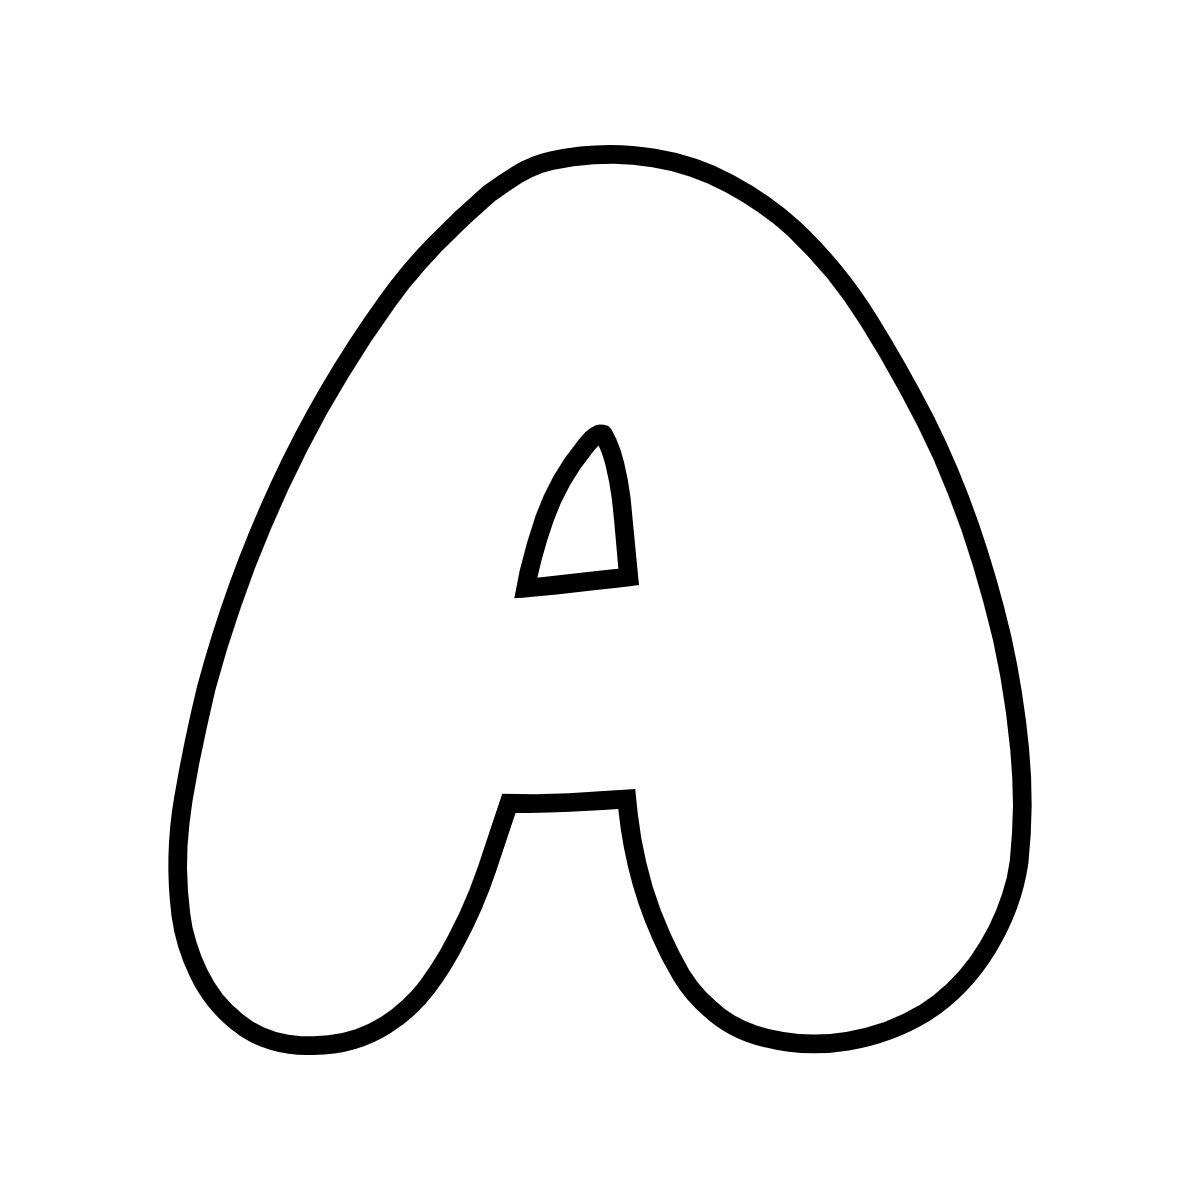 Printable Bubble Letters: Free Alphabet Font & Letter Templates